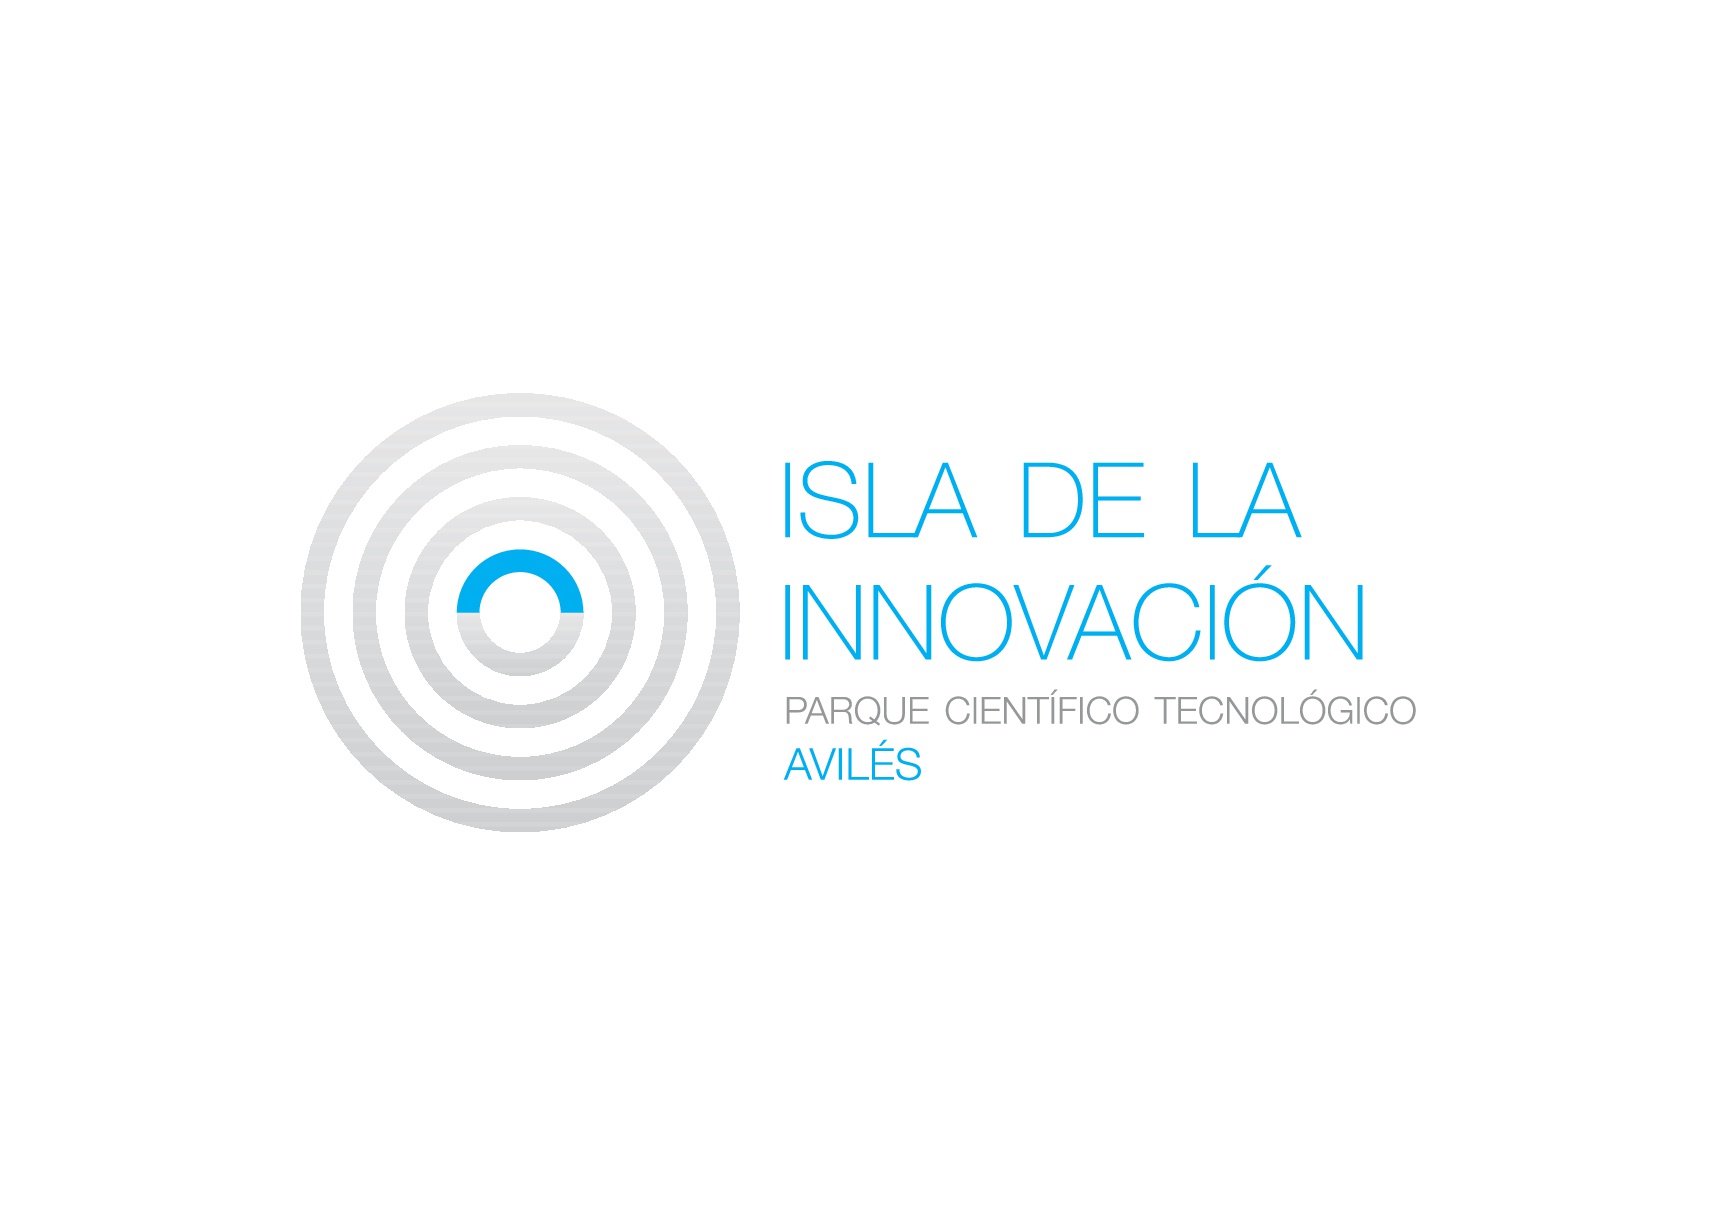 APTE reconoce al Parque Tecnológico Avilés Isla de la Innovación como el más activo de su Red Técnica